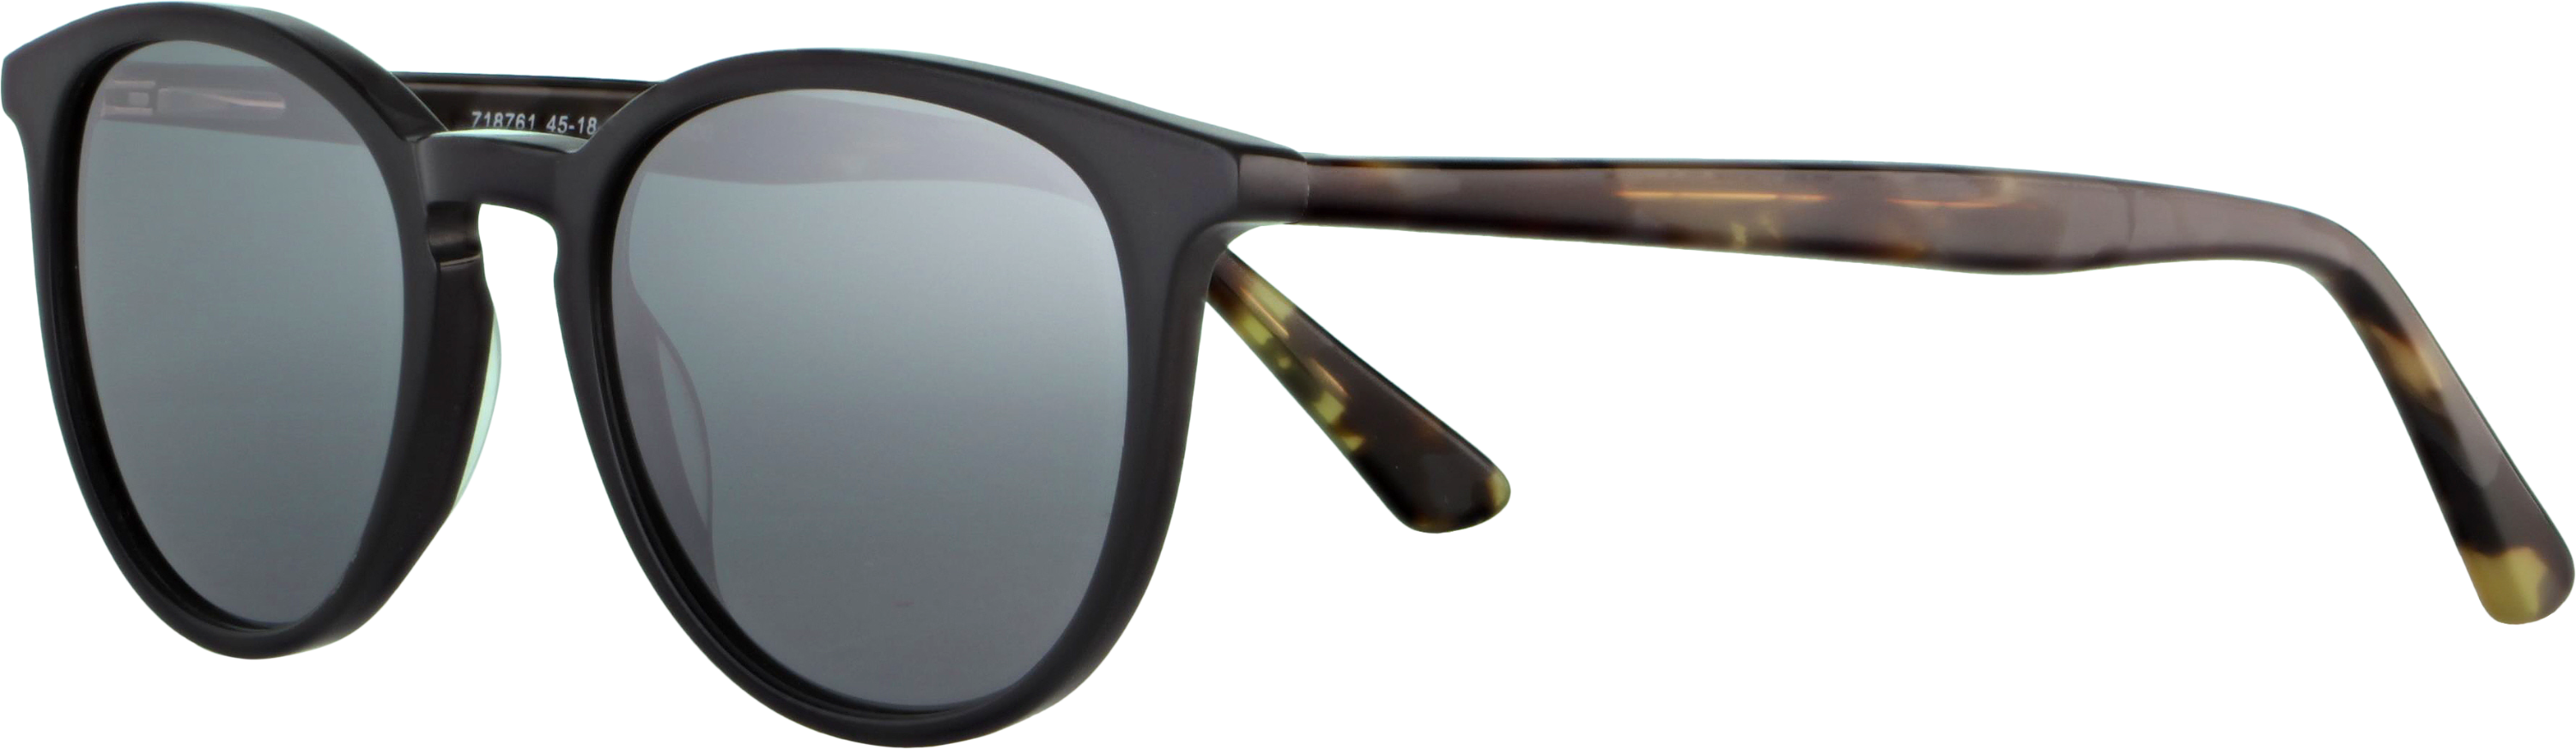 Das Bild zeigt die Sonnenbrille 718761 von der Marke Abele Optik in schwarz.